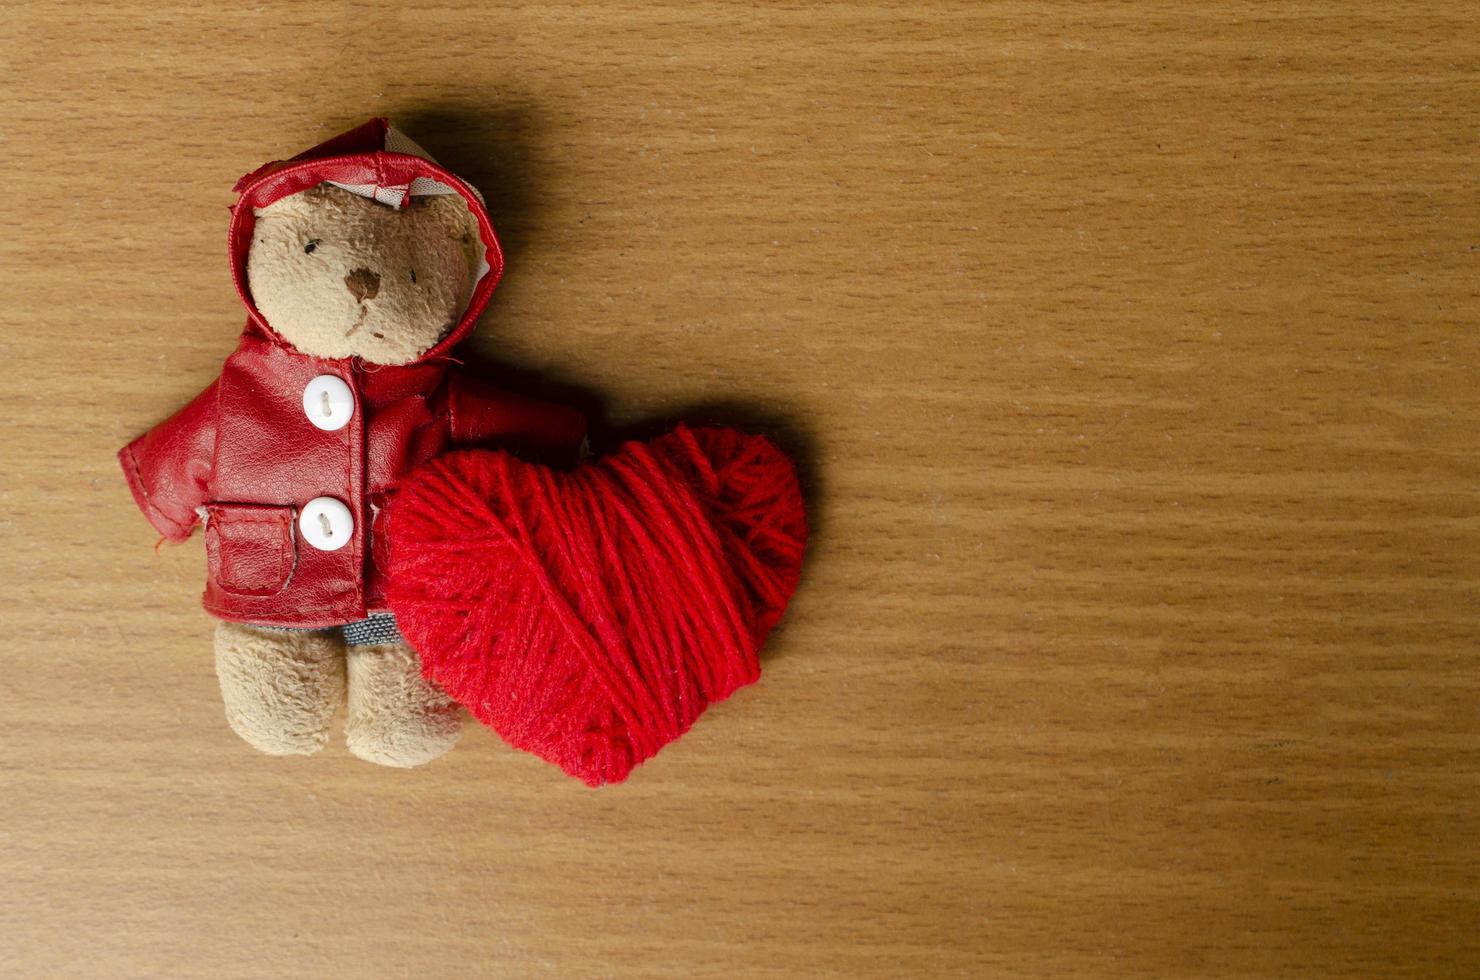 romantisch met teddy en rood hart voor valentijnsdagconcept foto